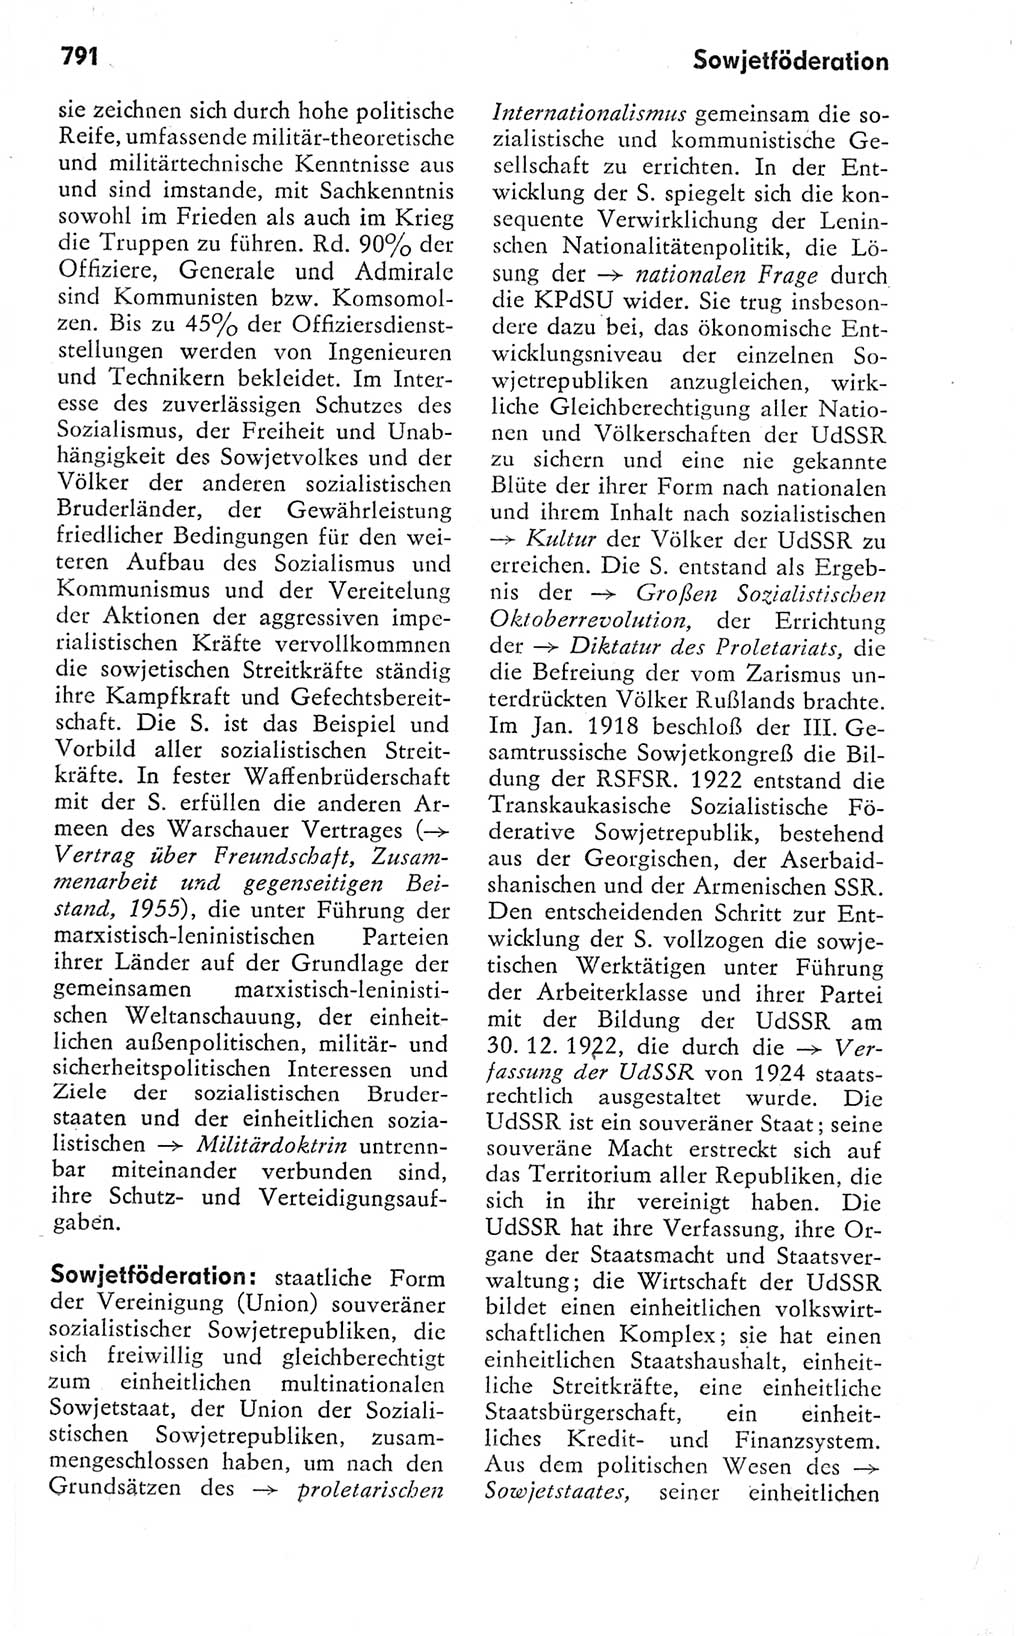 Kleines politisches Wörterbuch [Deutsche Demokratische Republik (DDR)] 1978, Seite 791 (Kl. pol. Wb. DDR 1978, S. 791)